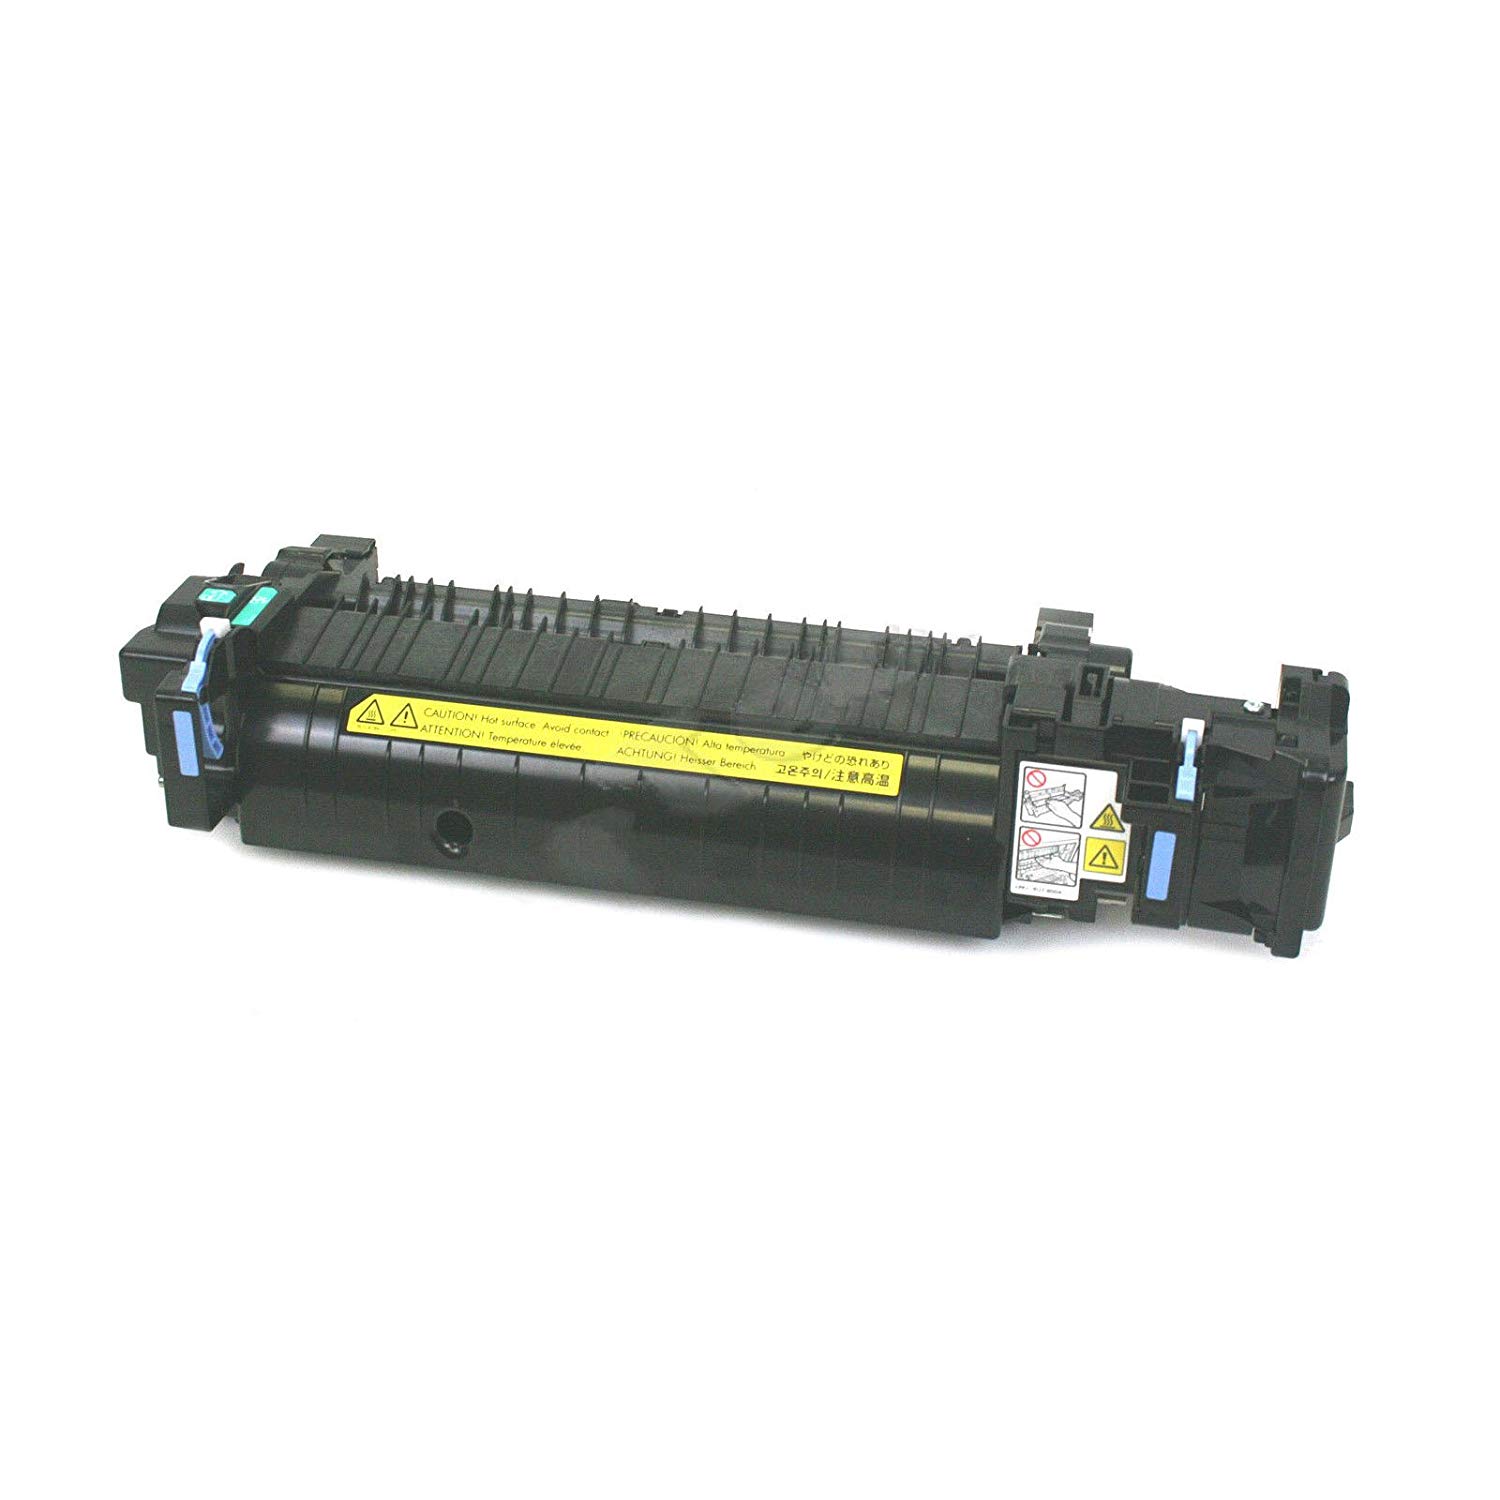 Γνήσιο HP Fuser RM1-3525 για εκτυπωτές:  HP LaserJet 1500, 2500